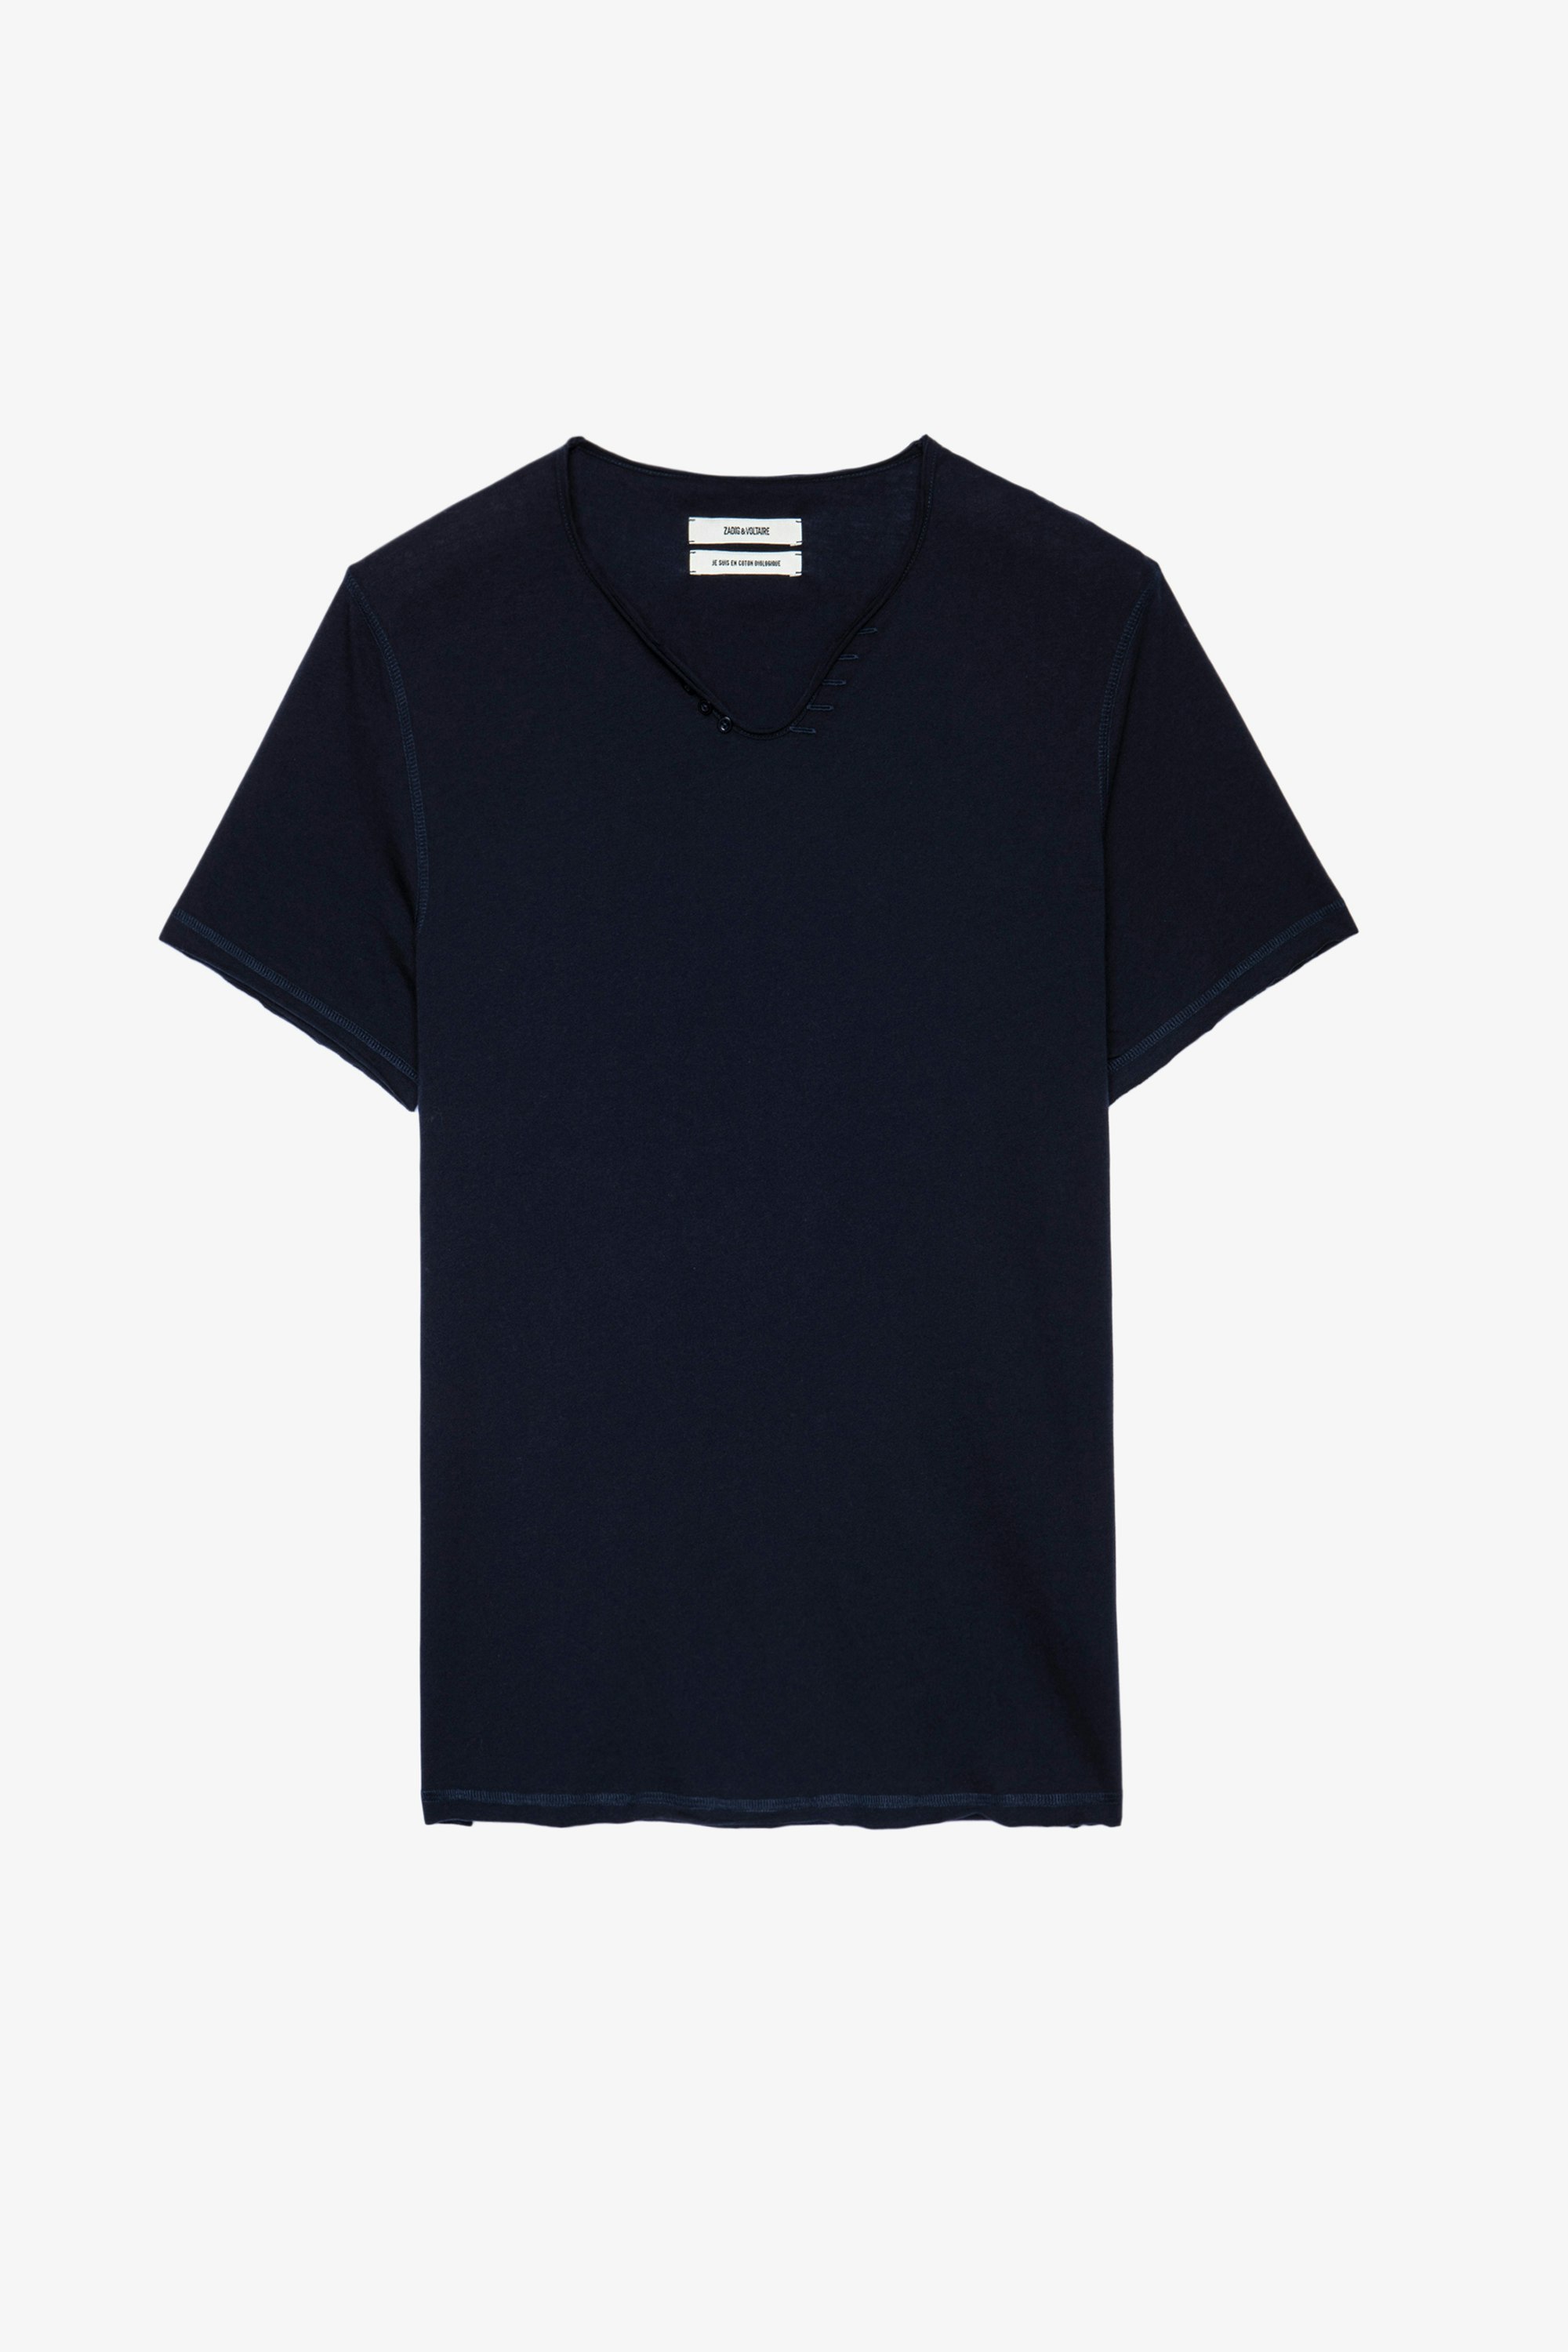 Monastir T-shirt Men’s blue cotton henley T-shirt